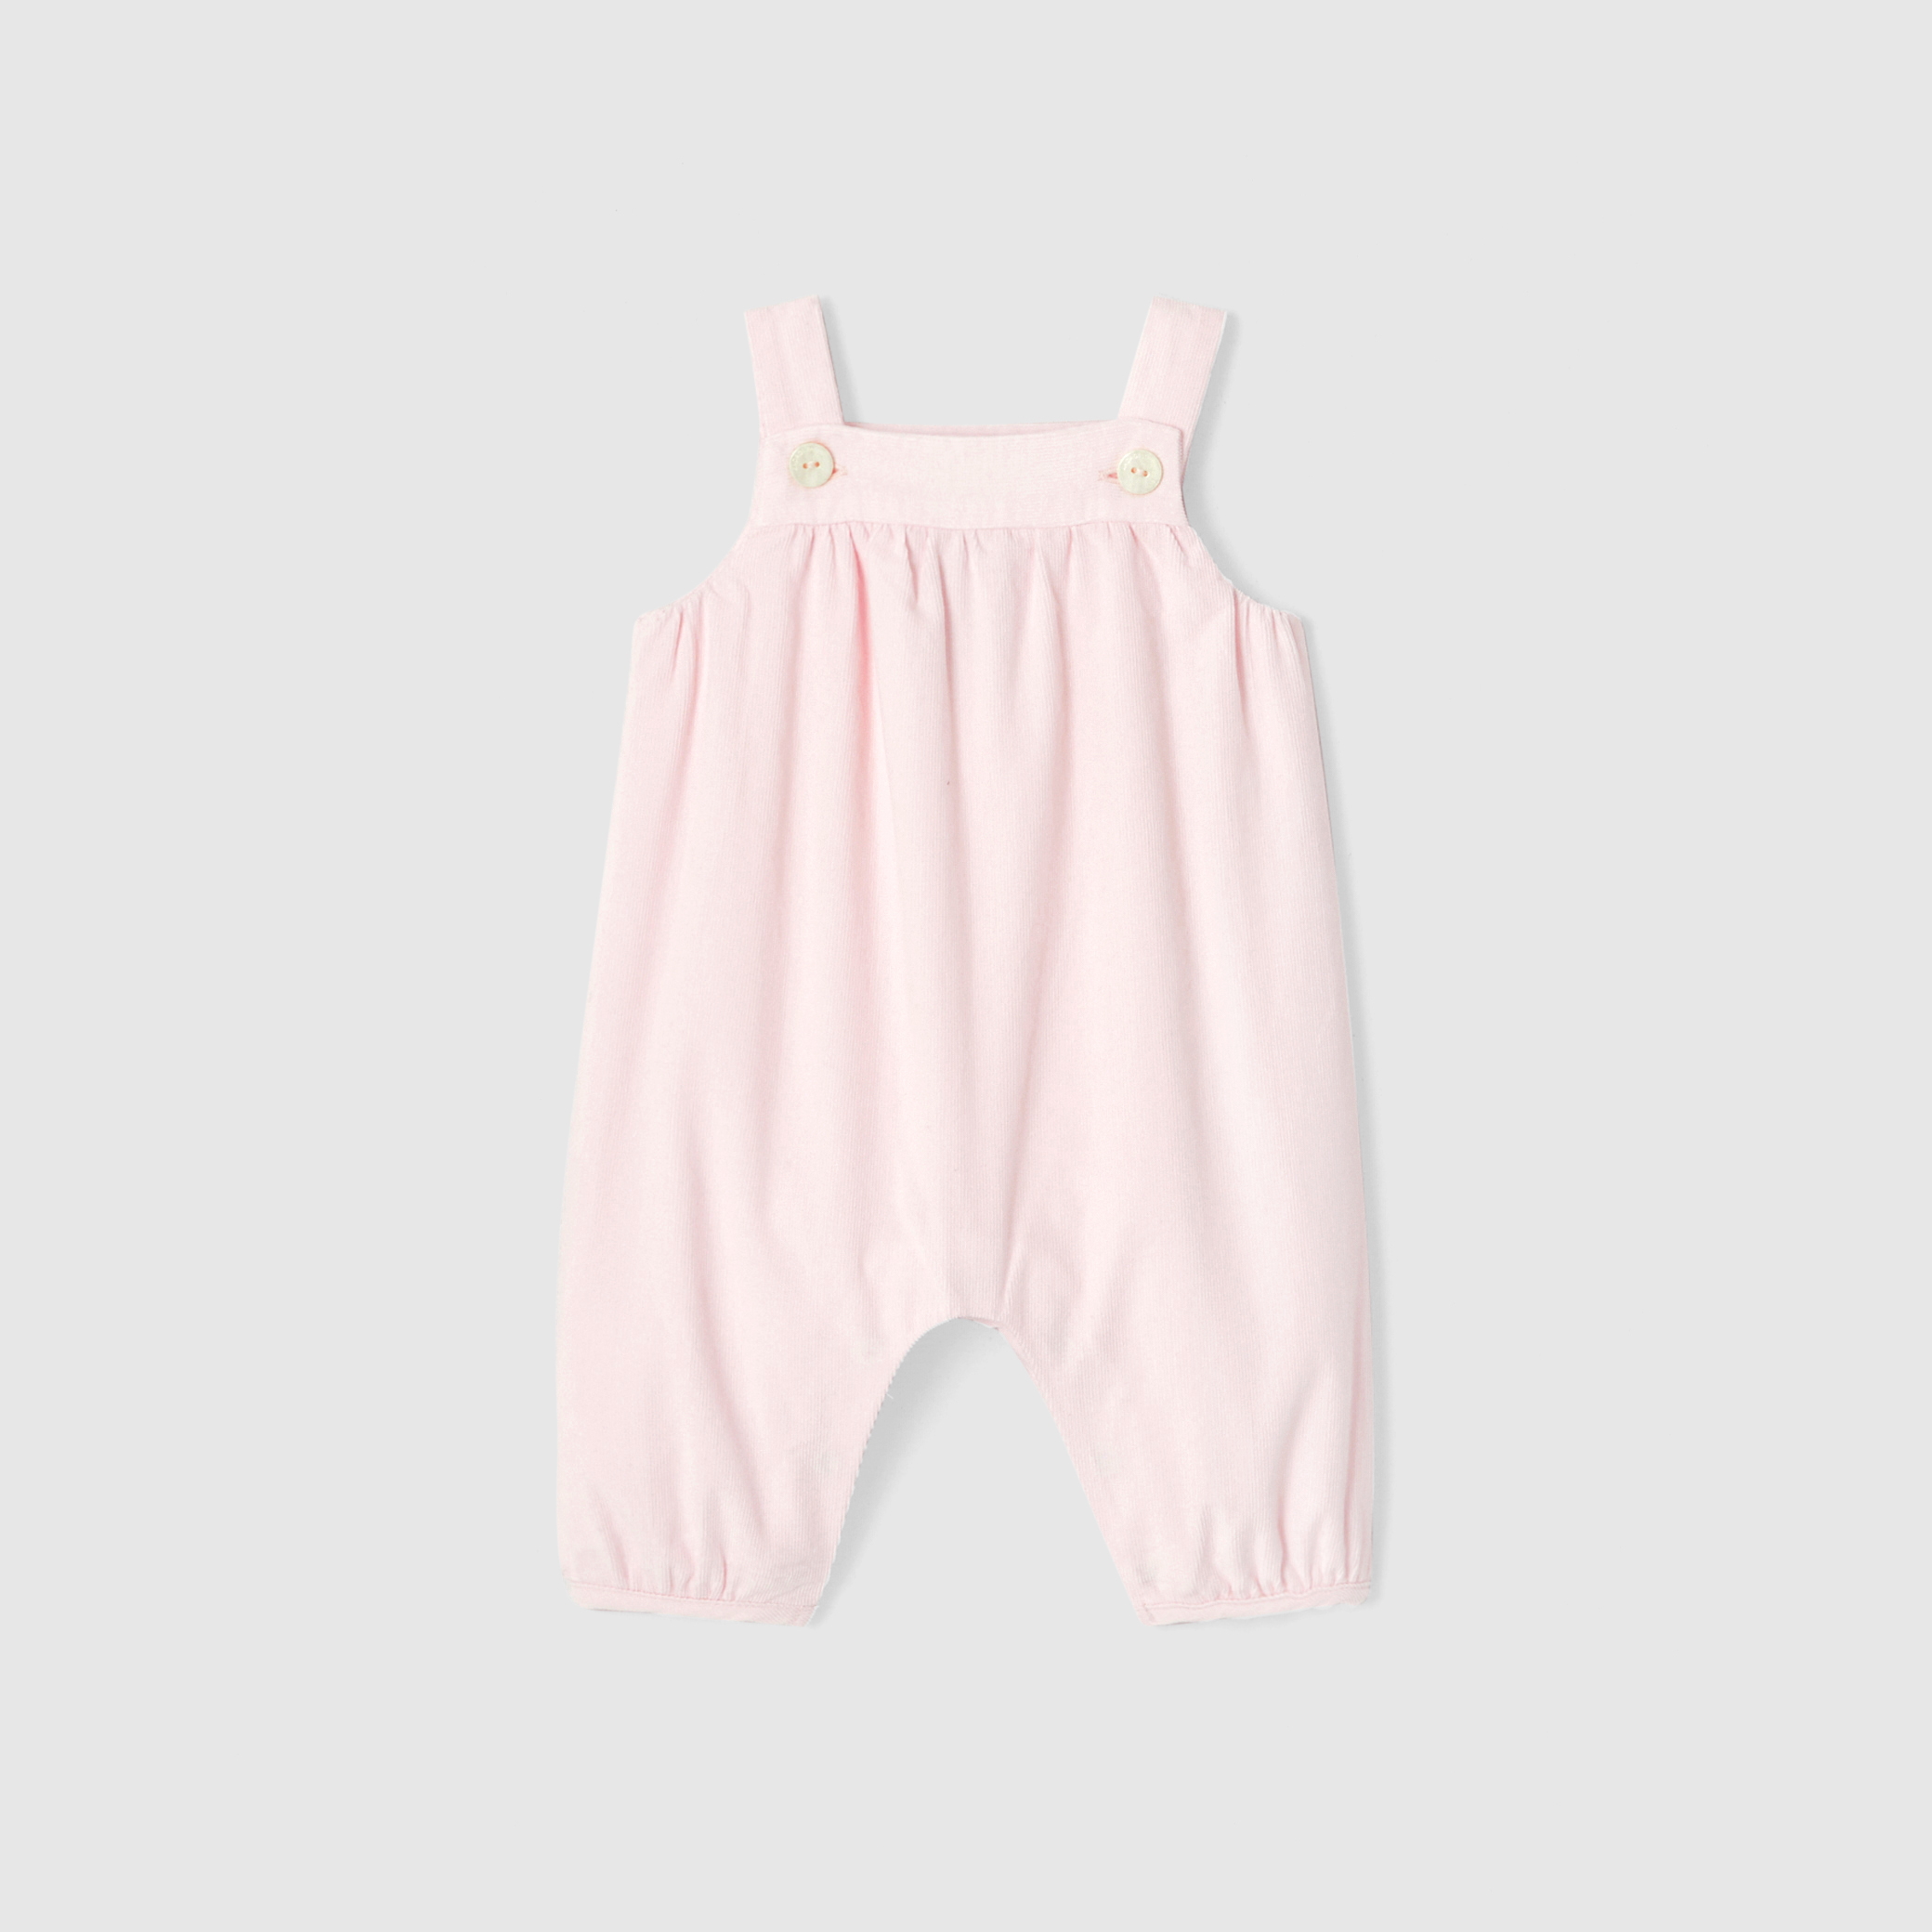 Baby girl velour overalls